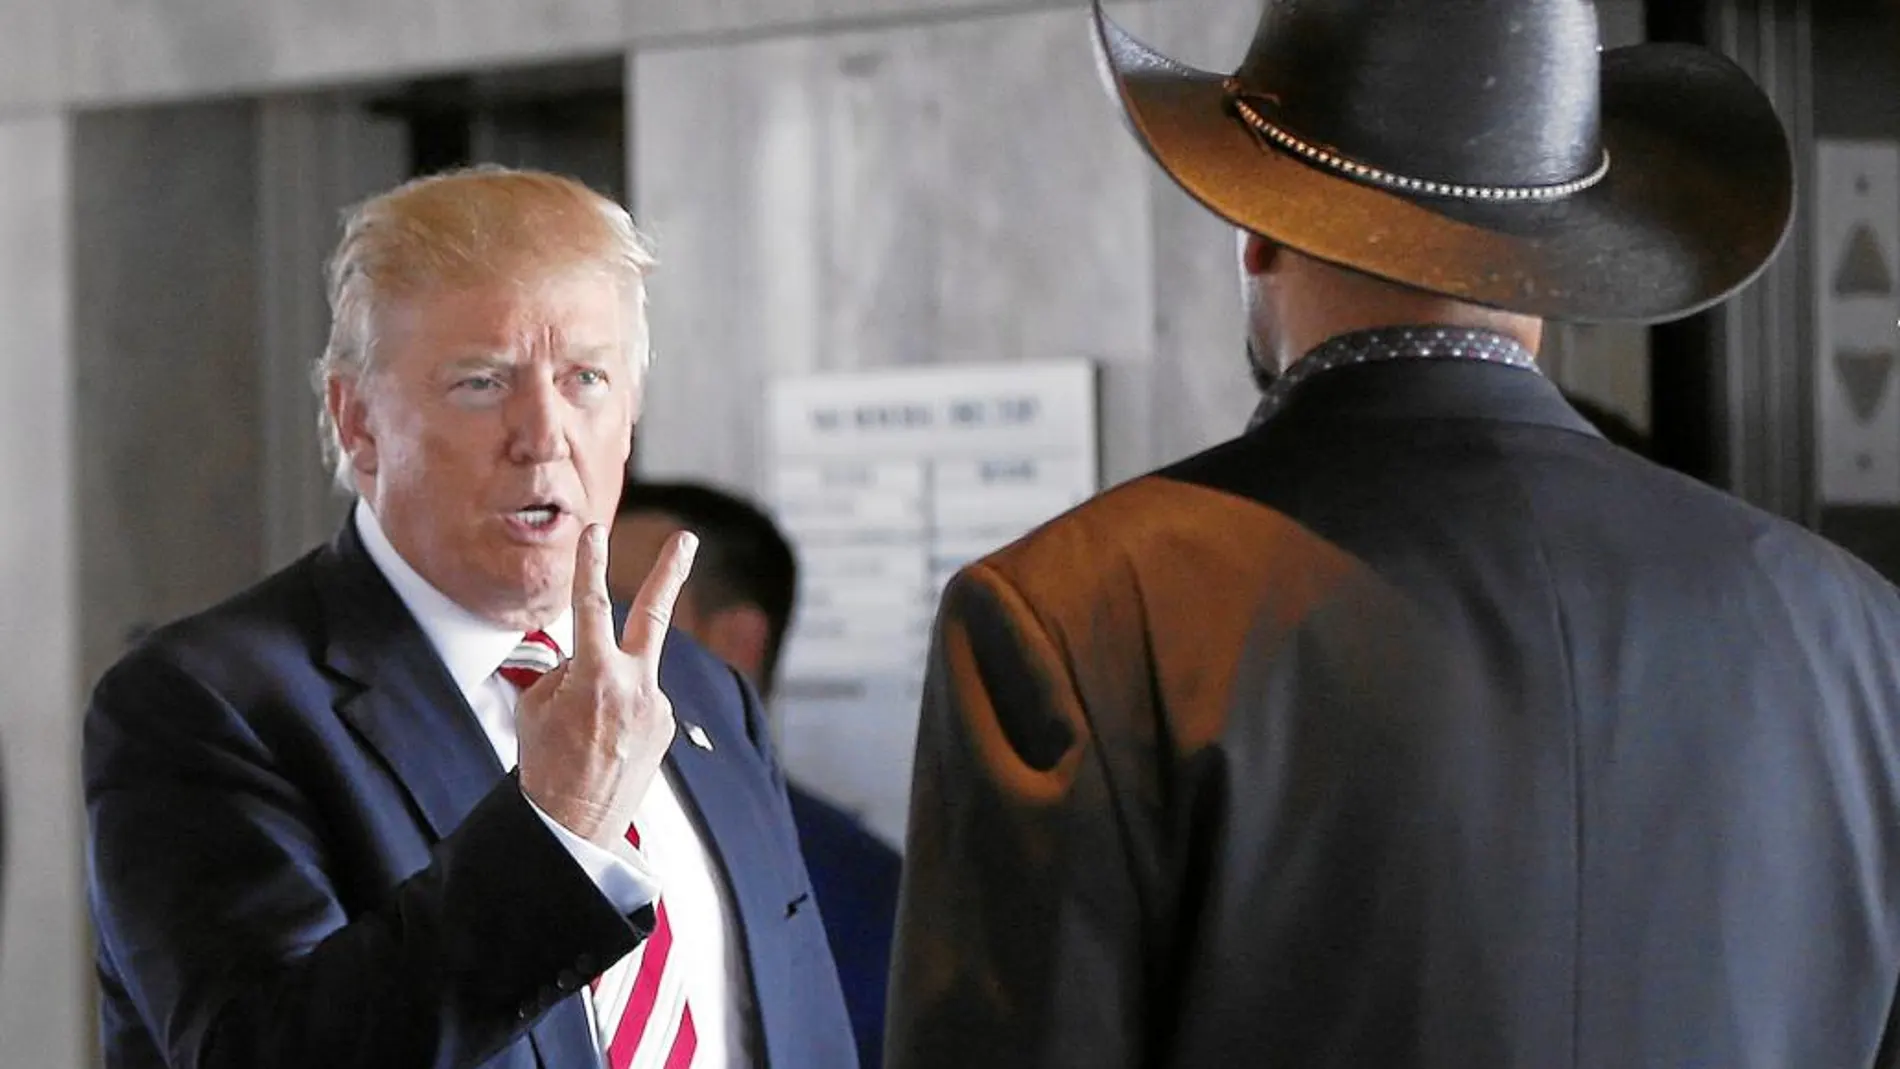 El candidato republicano, Donald Trump, gesticula al hablar con un sheriff de Milwaukee